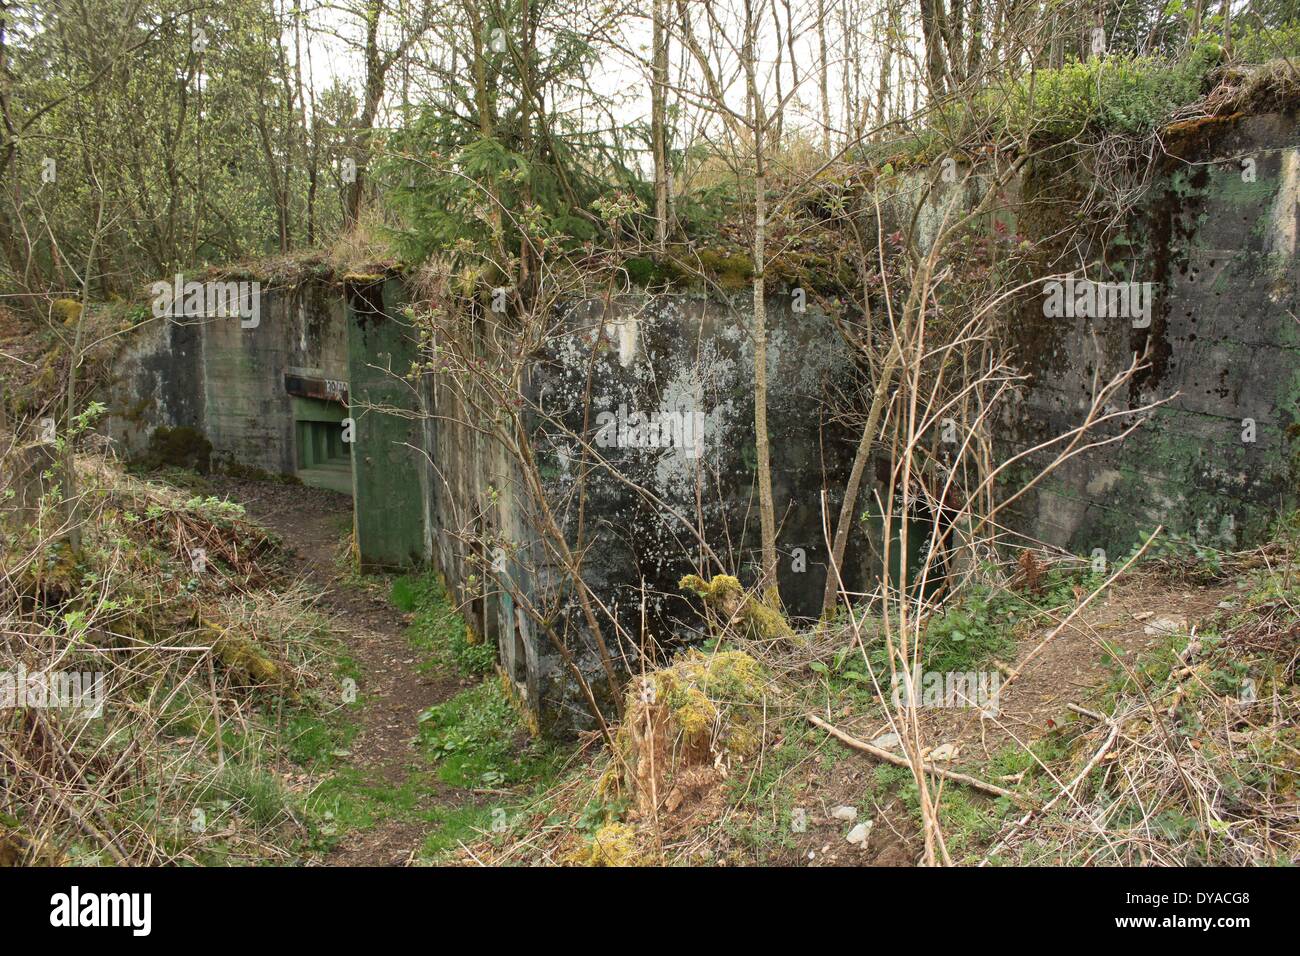 The Westwall Bunker 139-40 inside range - Eifel forest Hürtgenwald Stock Photo